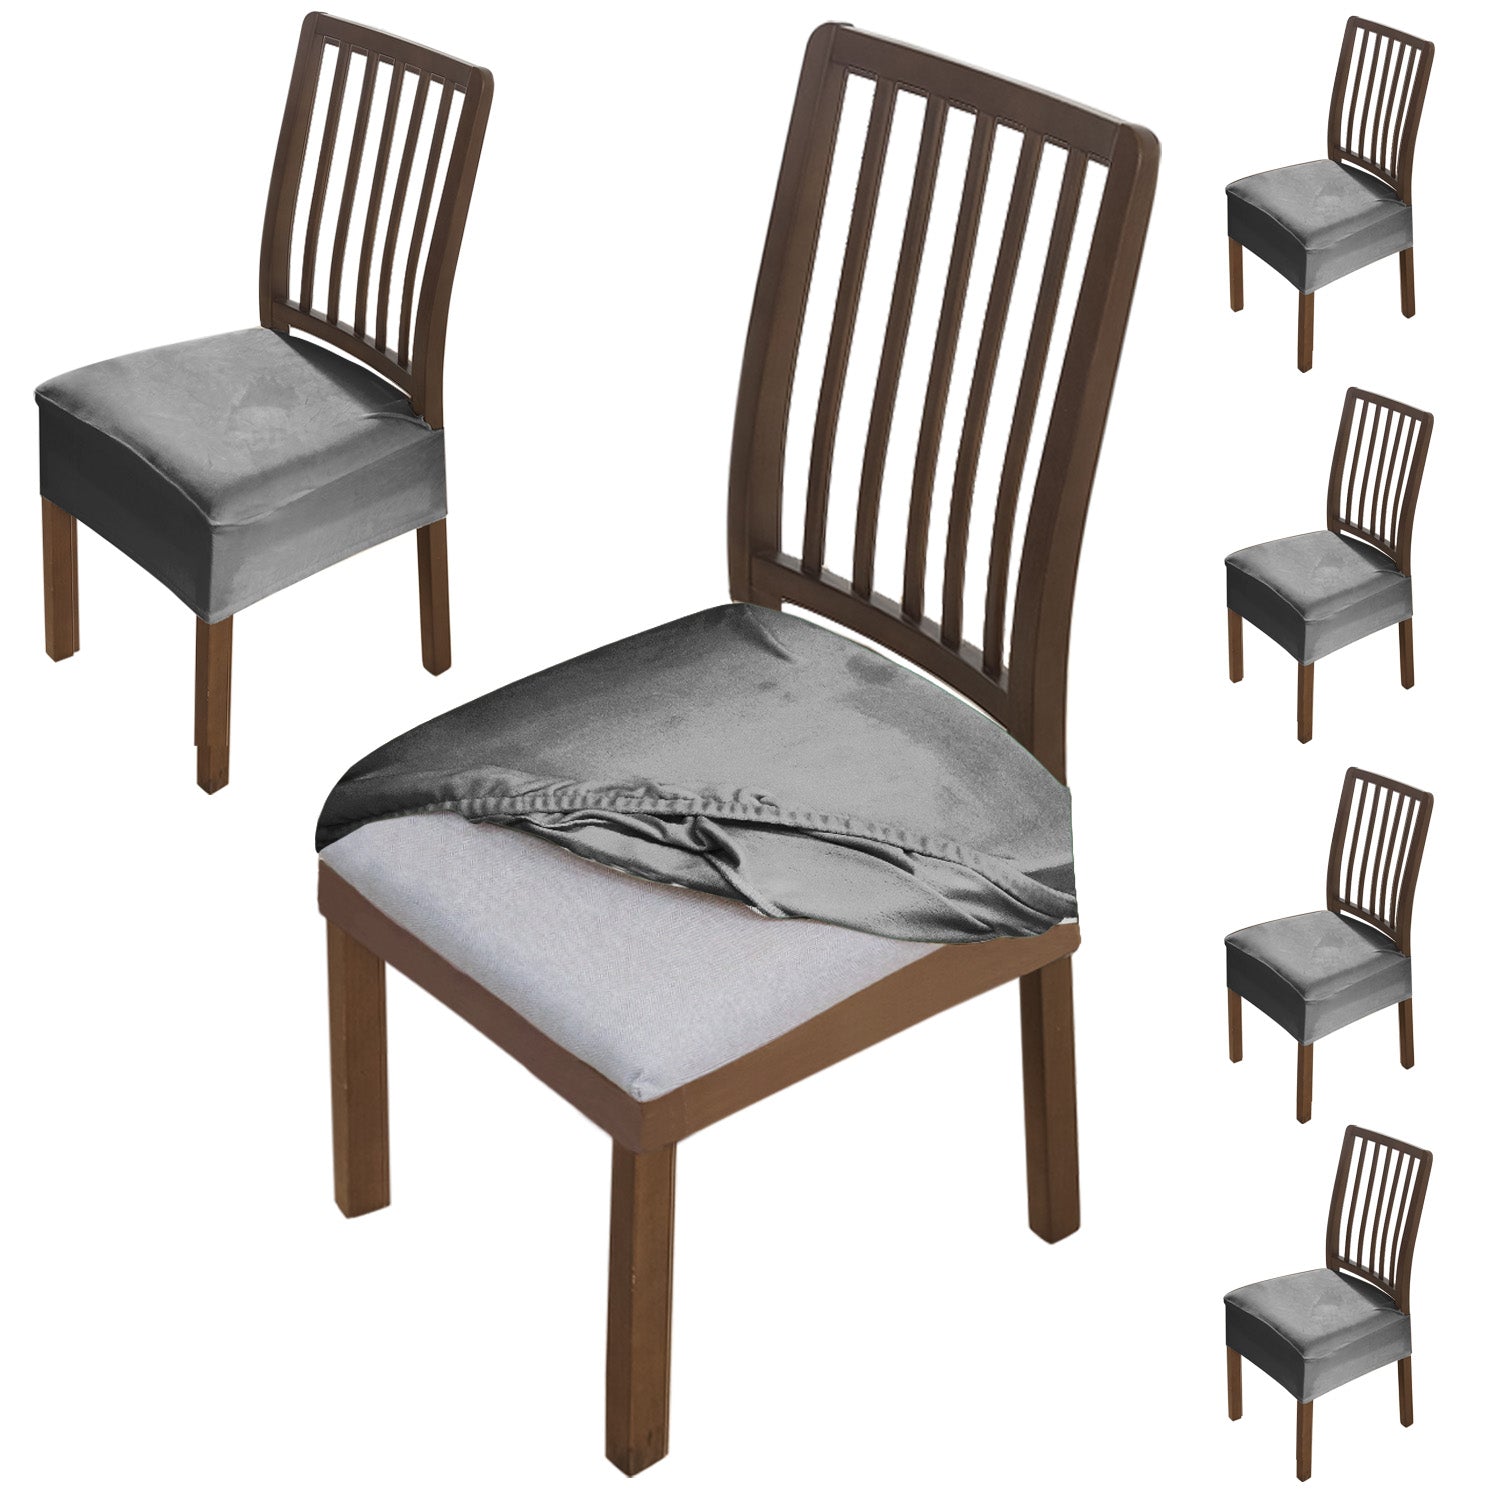 Premium Original Velvet Dining Chair Seat Cushion Cover, Dark Grey